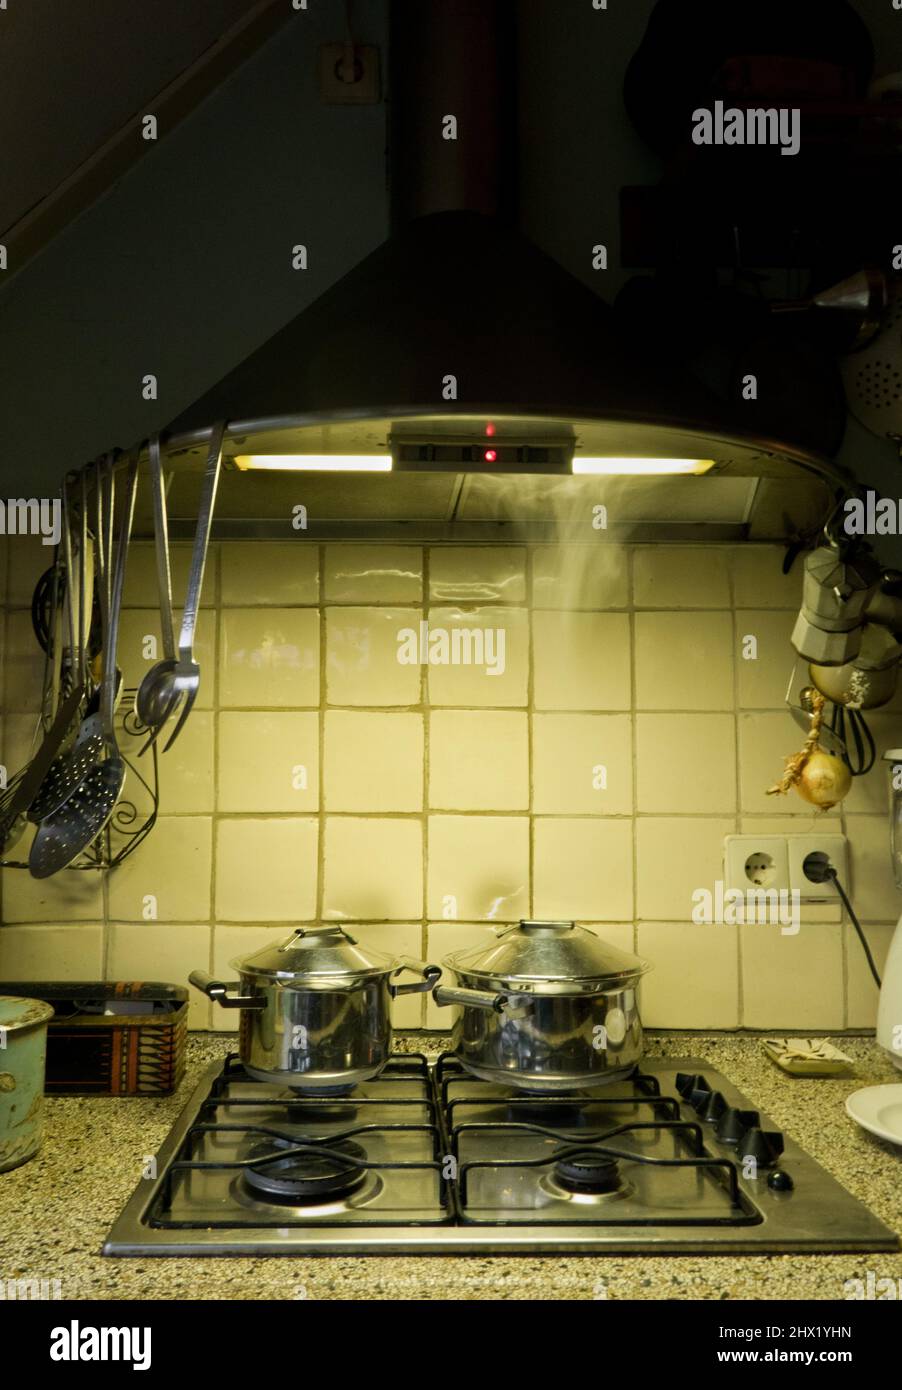 Préparation des repas le soir: Casseroles sur cuisinière à gaz dans la cuisine par lamtright Banque D'Images